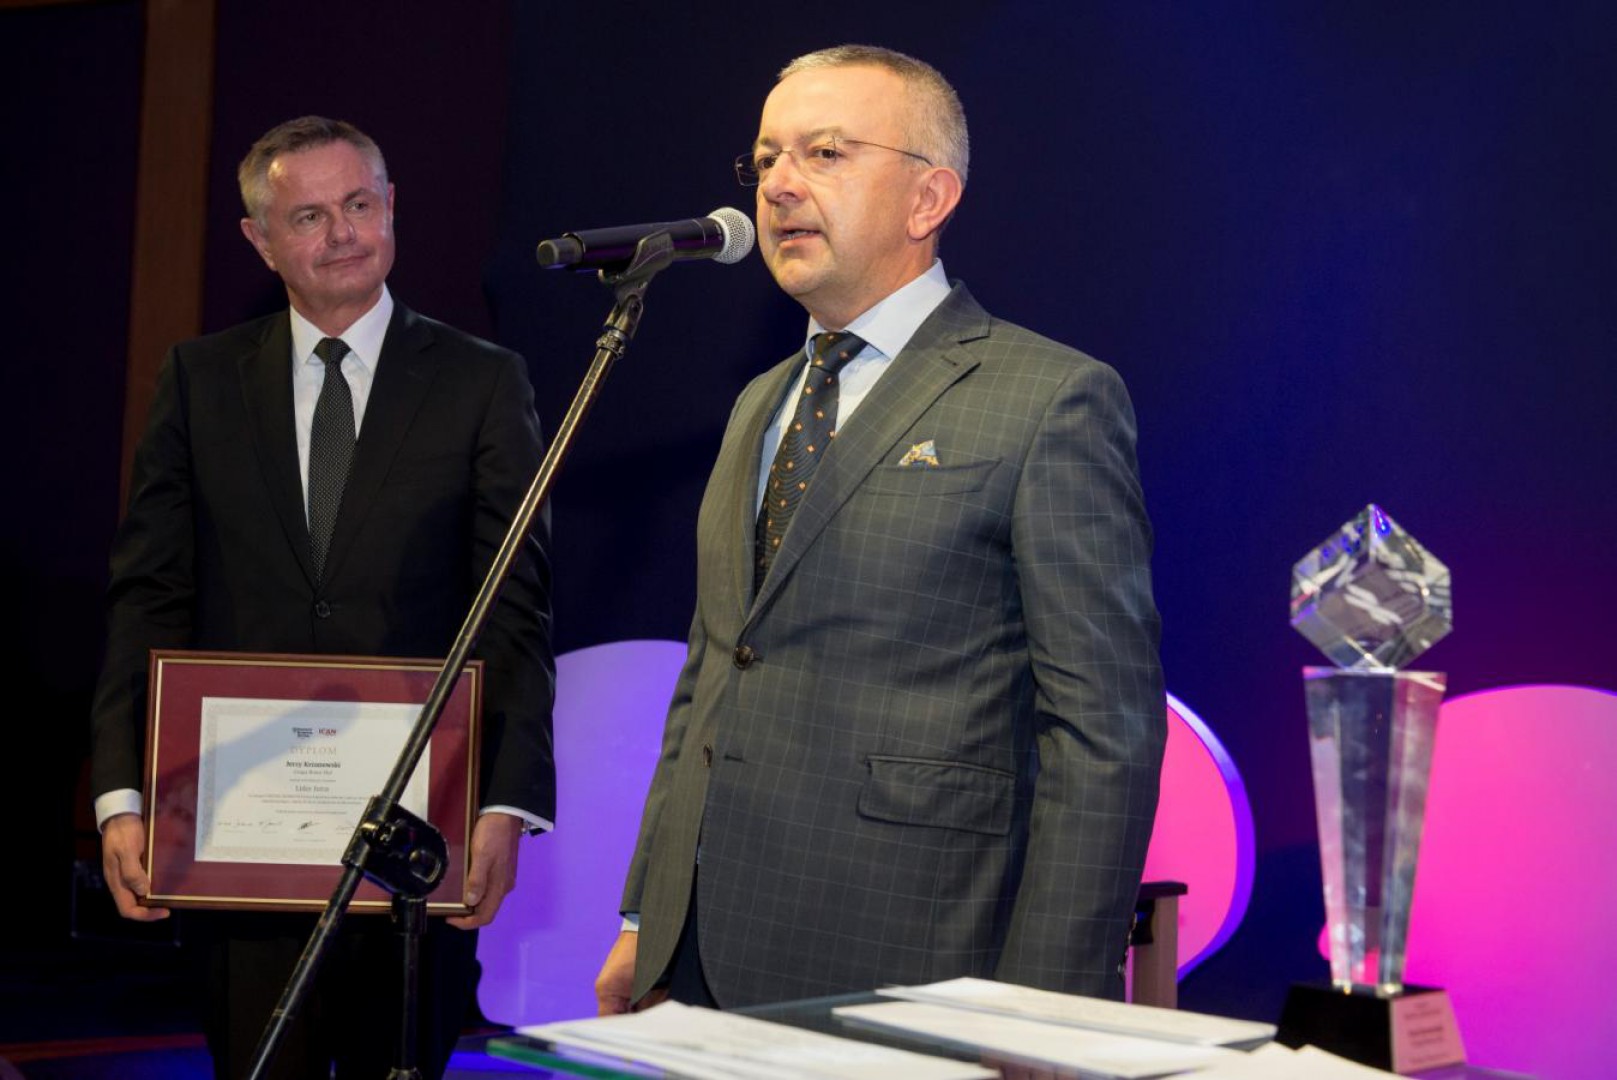 Adam i Jerzy Krzanowscy, właściciele Grupy Nowy Styl, zostali uhonorowani tytułem Liderów Jutra. Fot. ICAN Institute